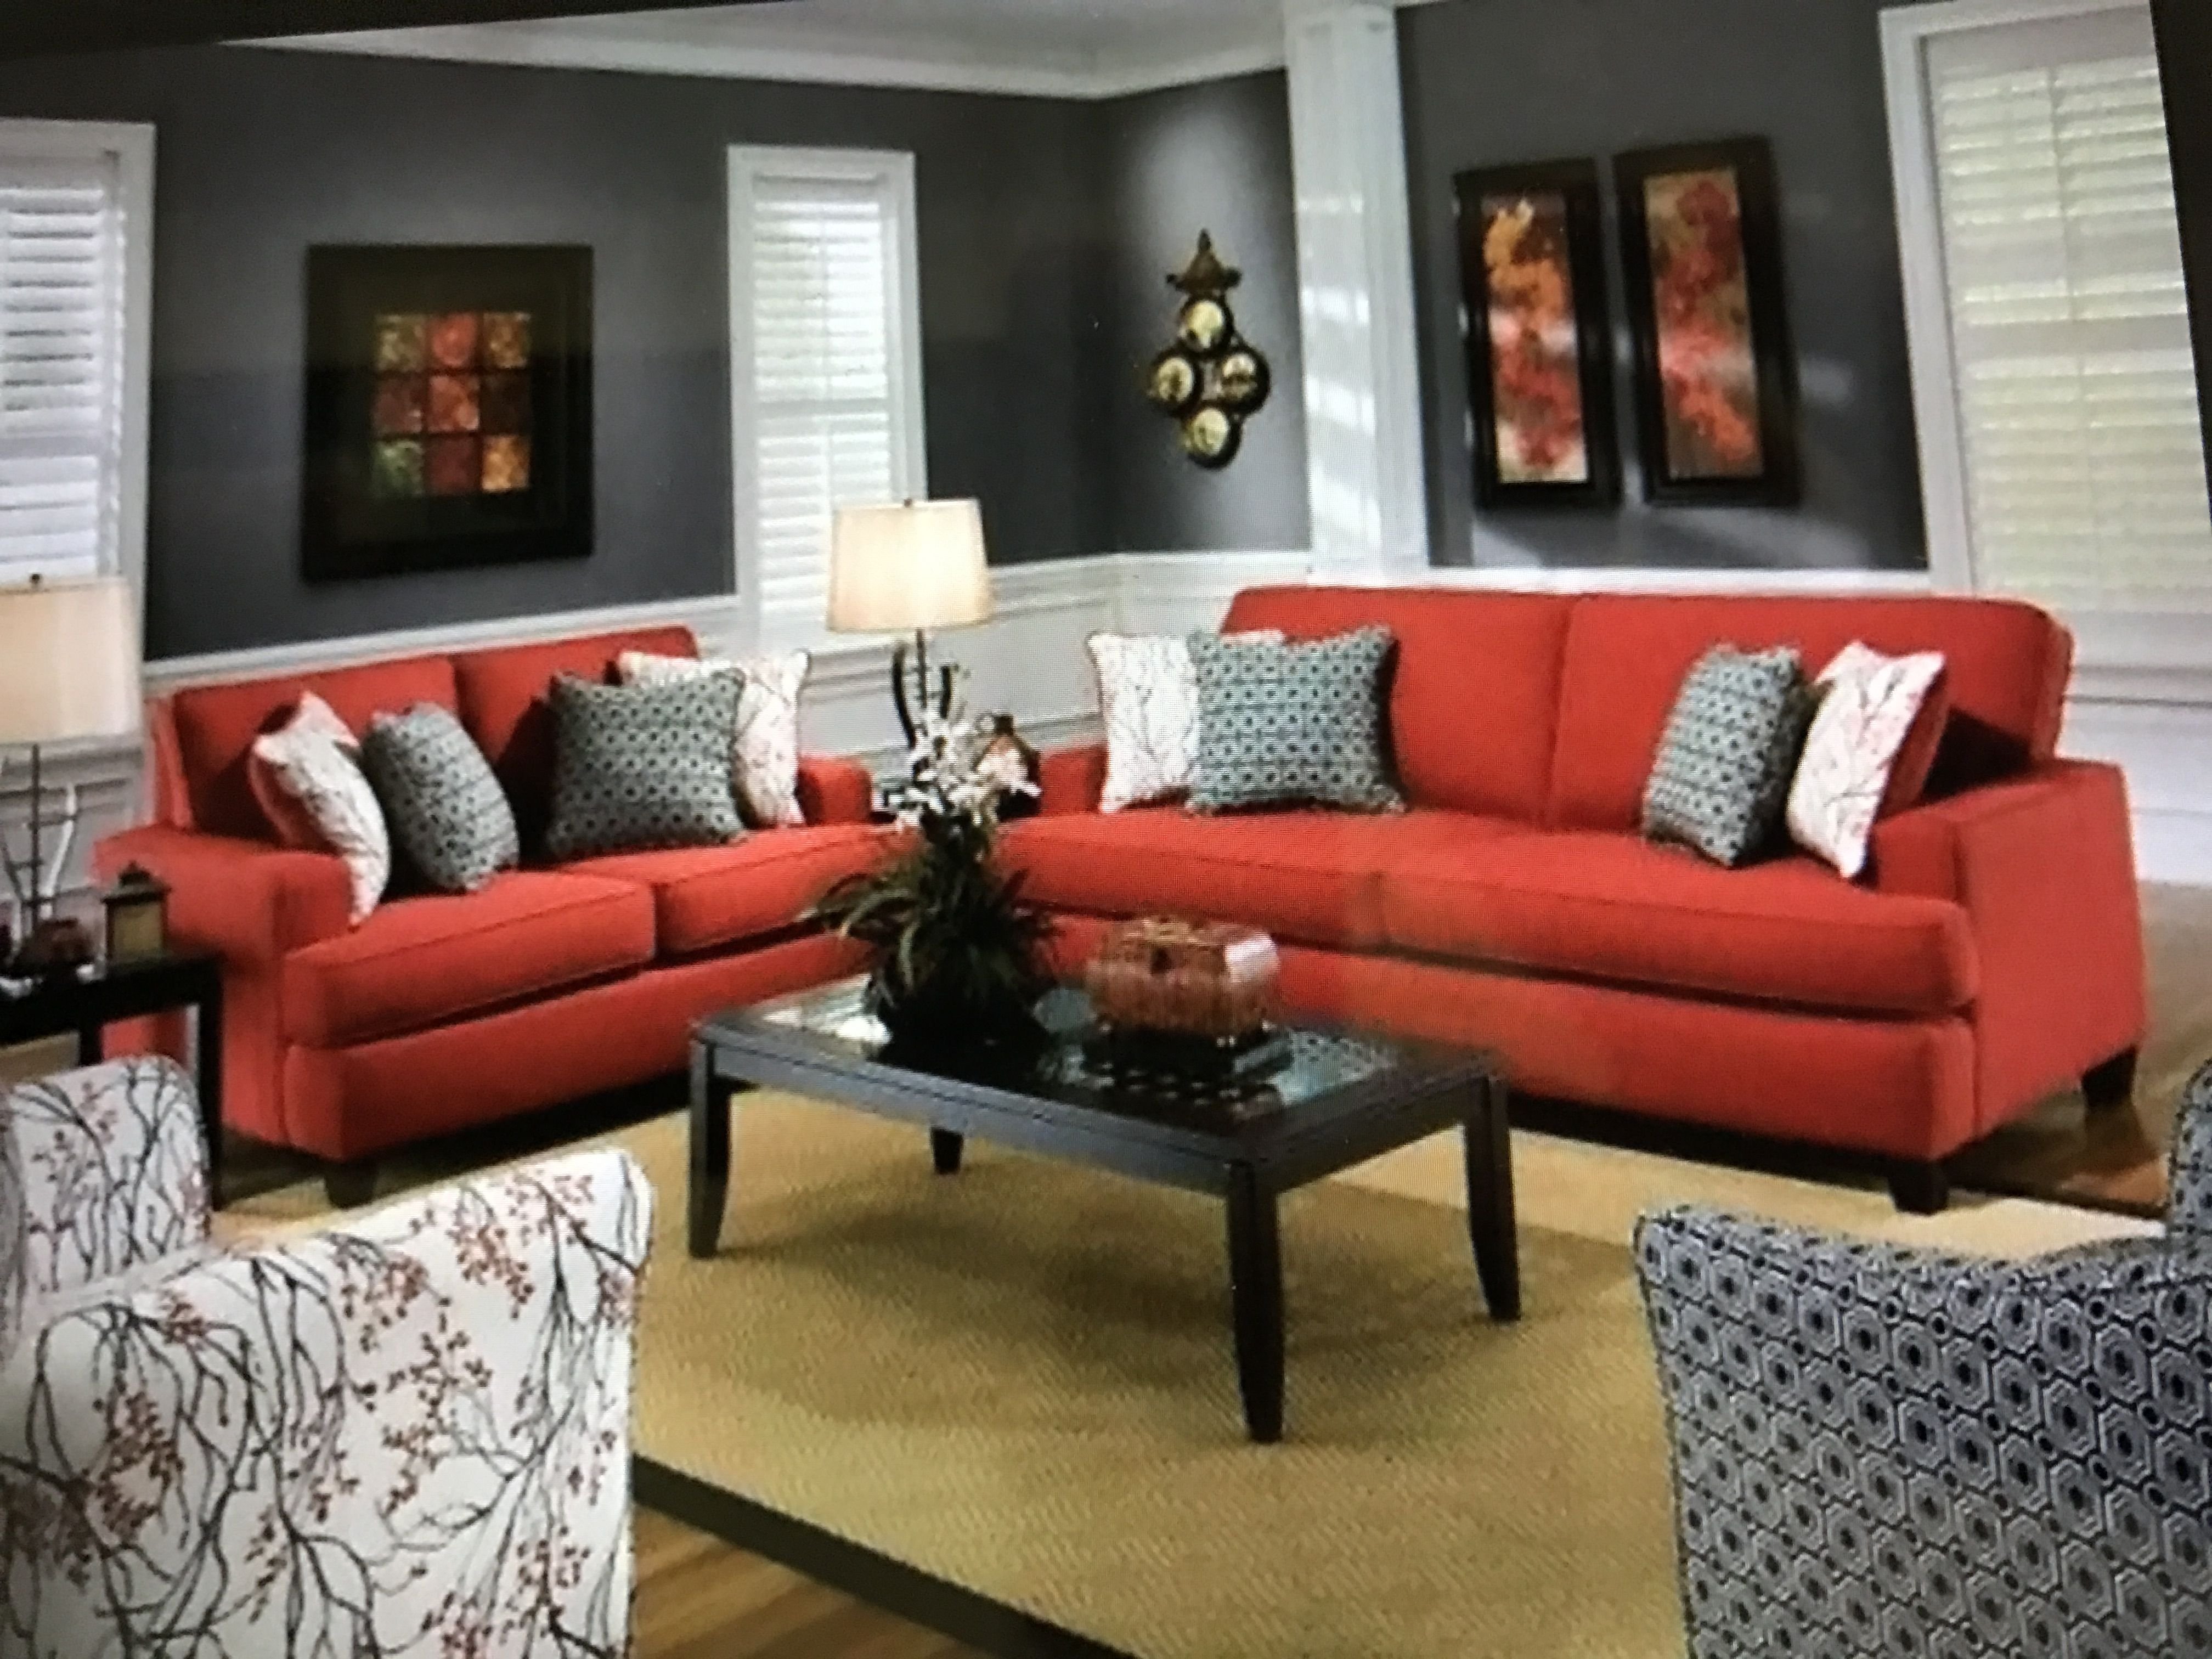 Сочетание цветов в интерьере гостиной серый. Красный диван. Диван в интерьере. Гостиная с красным диваном. Красный диван в интерьере гостиной.